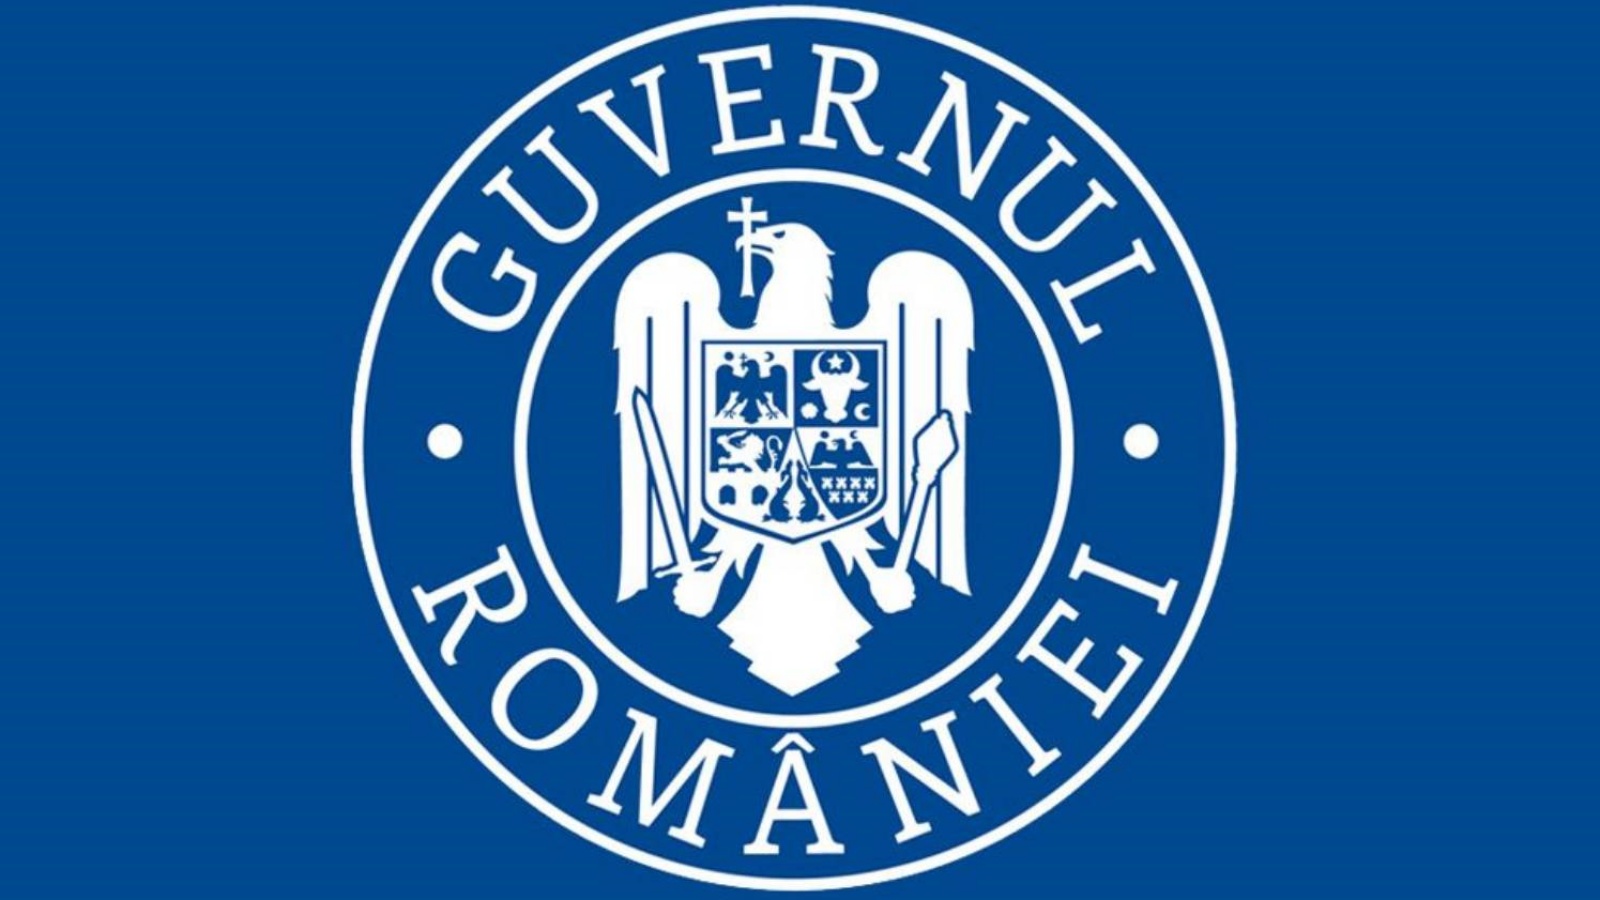 Romanian hallitus saa ensimmäisen miljardin euron käyttöön PNRR:n kautta